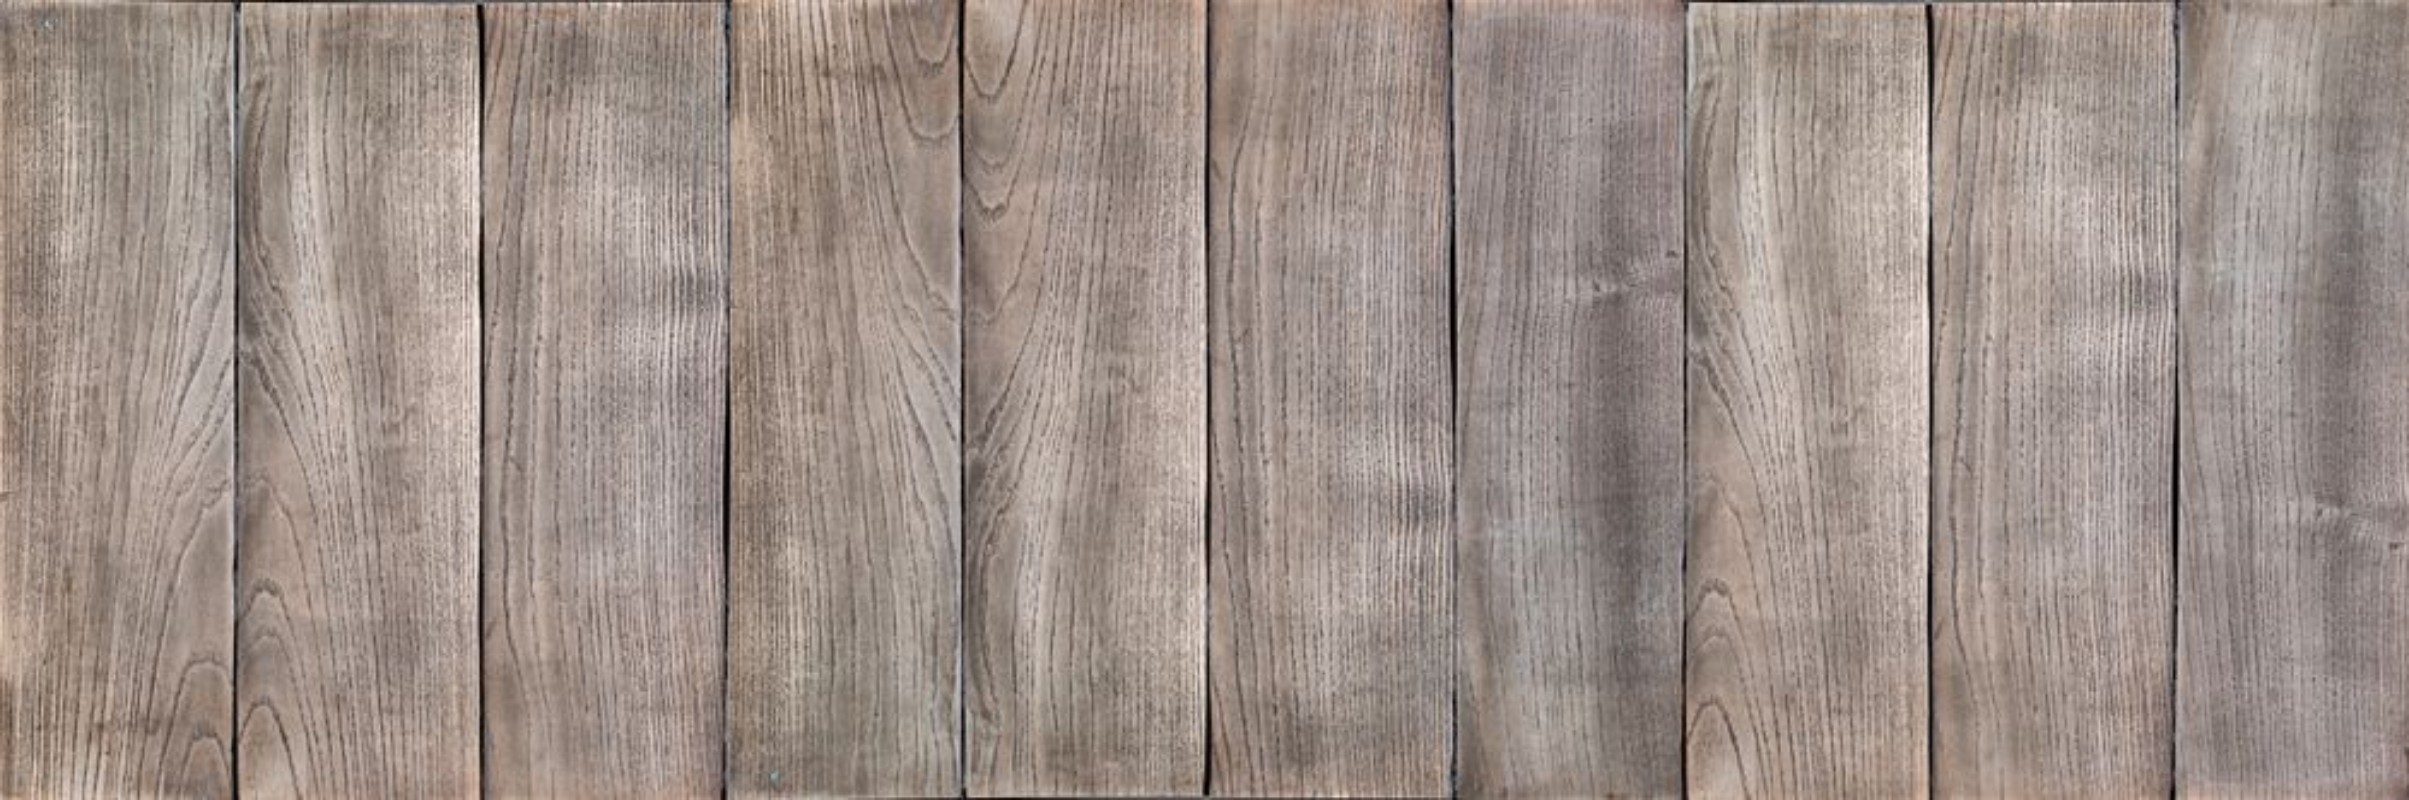 Afbeeldingen van Wood background or texture